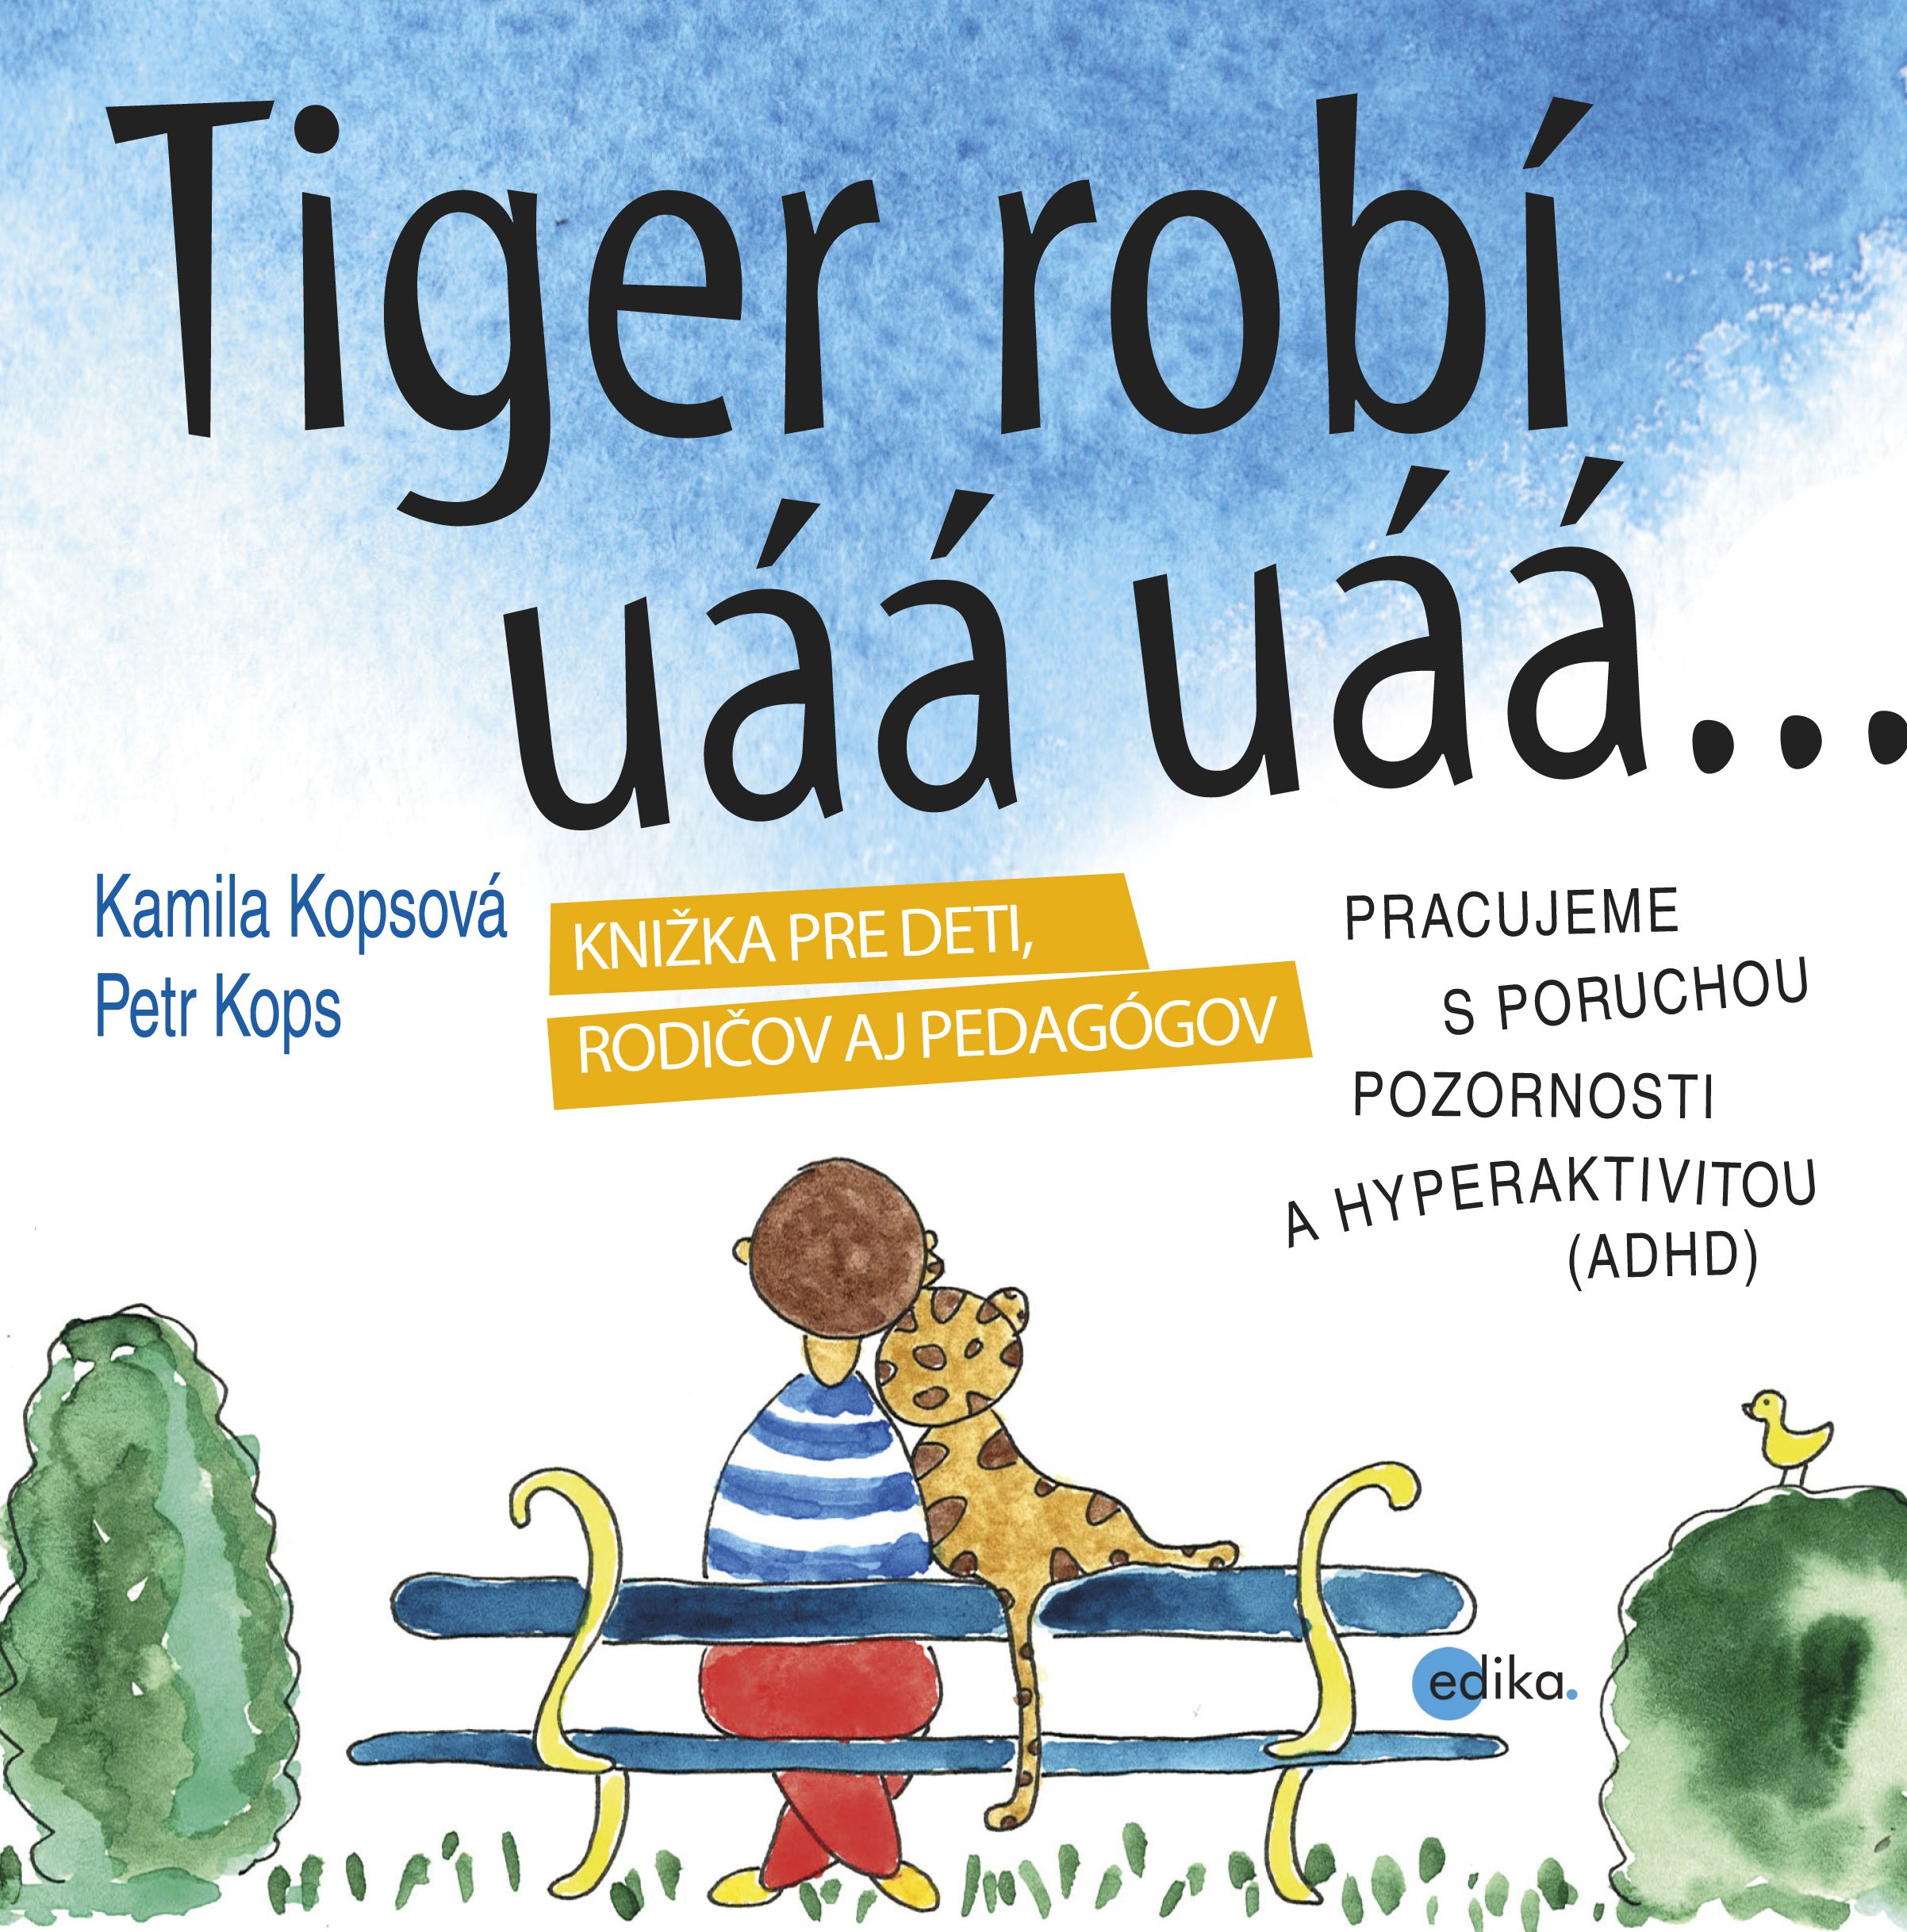 Tiger robí uáá uáá - Kamila Kopsová a Petr Kops